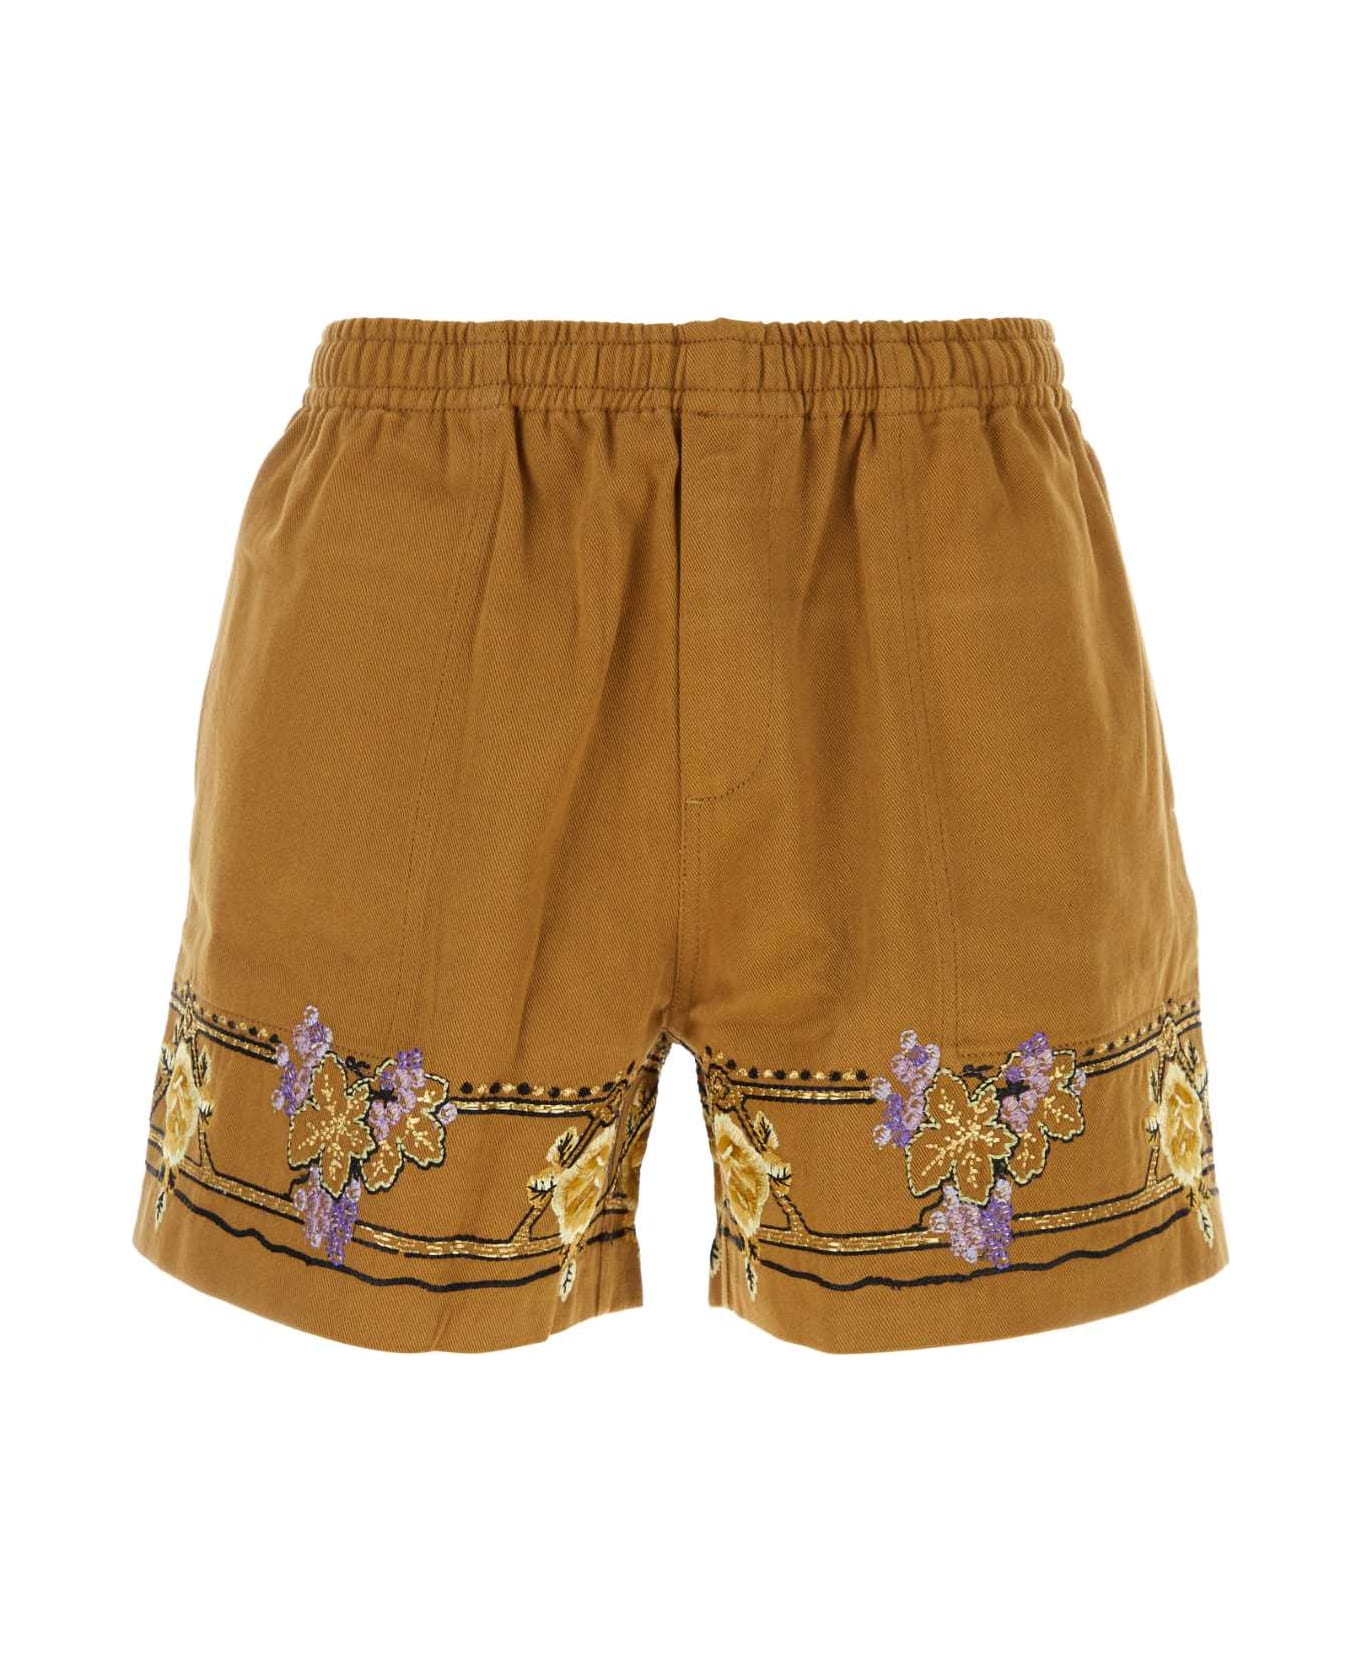 Bode Caramel Cotton Bermuda Shorts - BROWNMULTI ショートパンツ